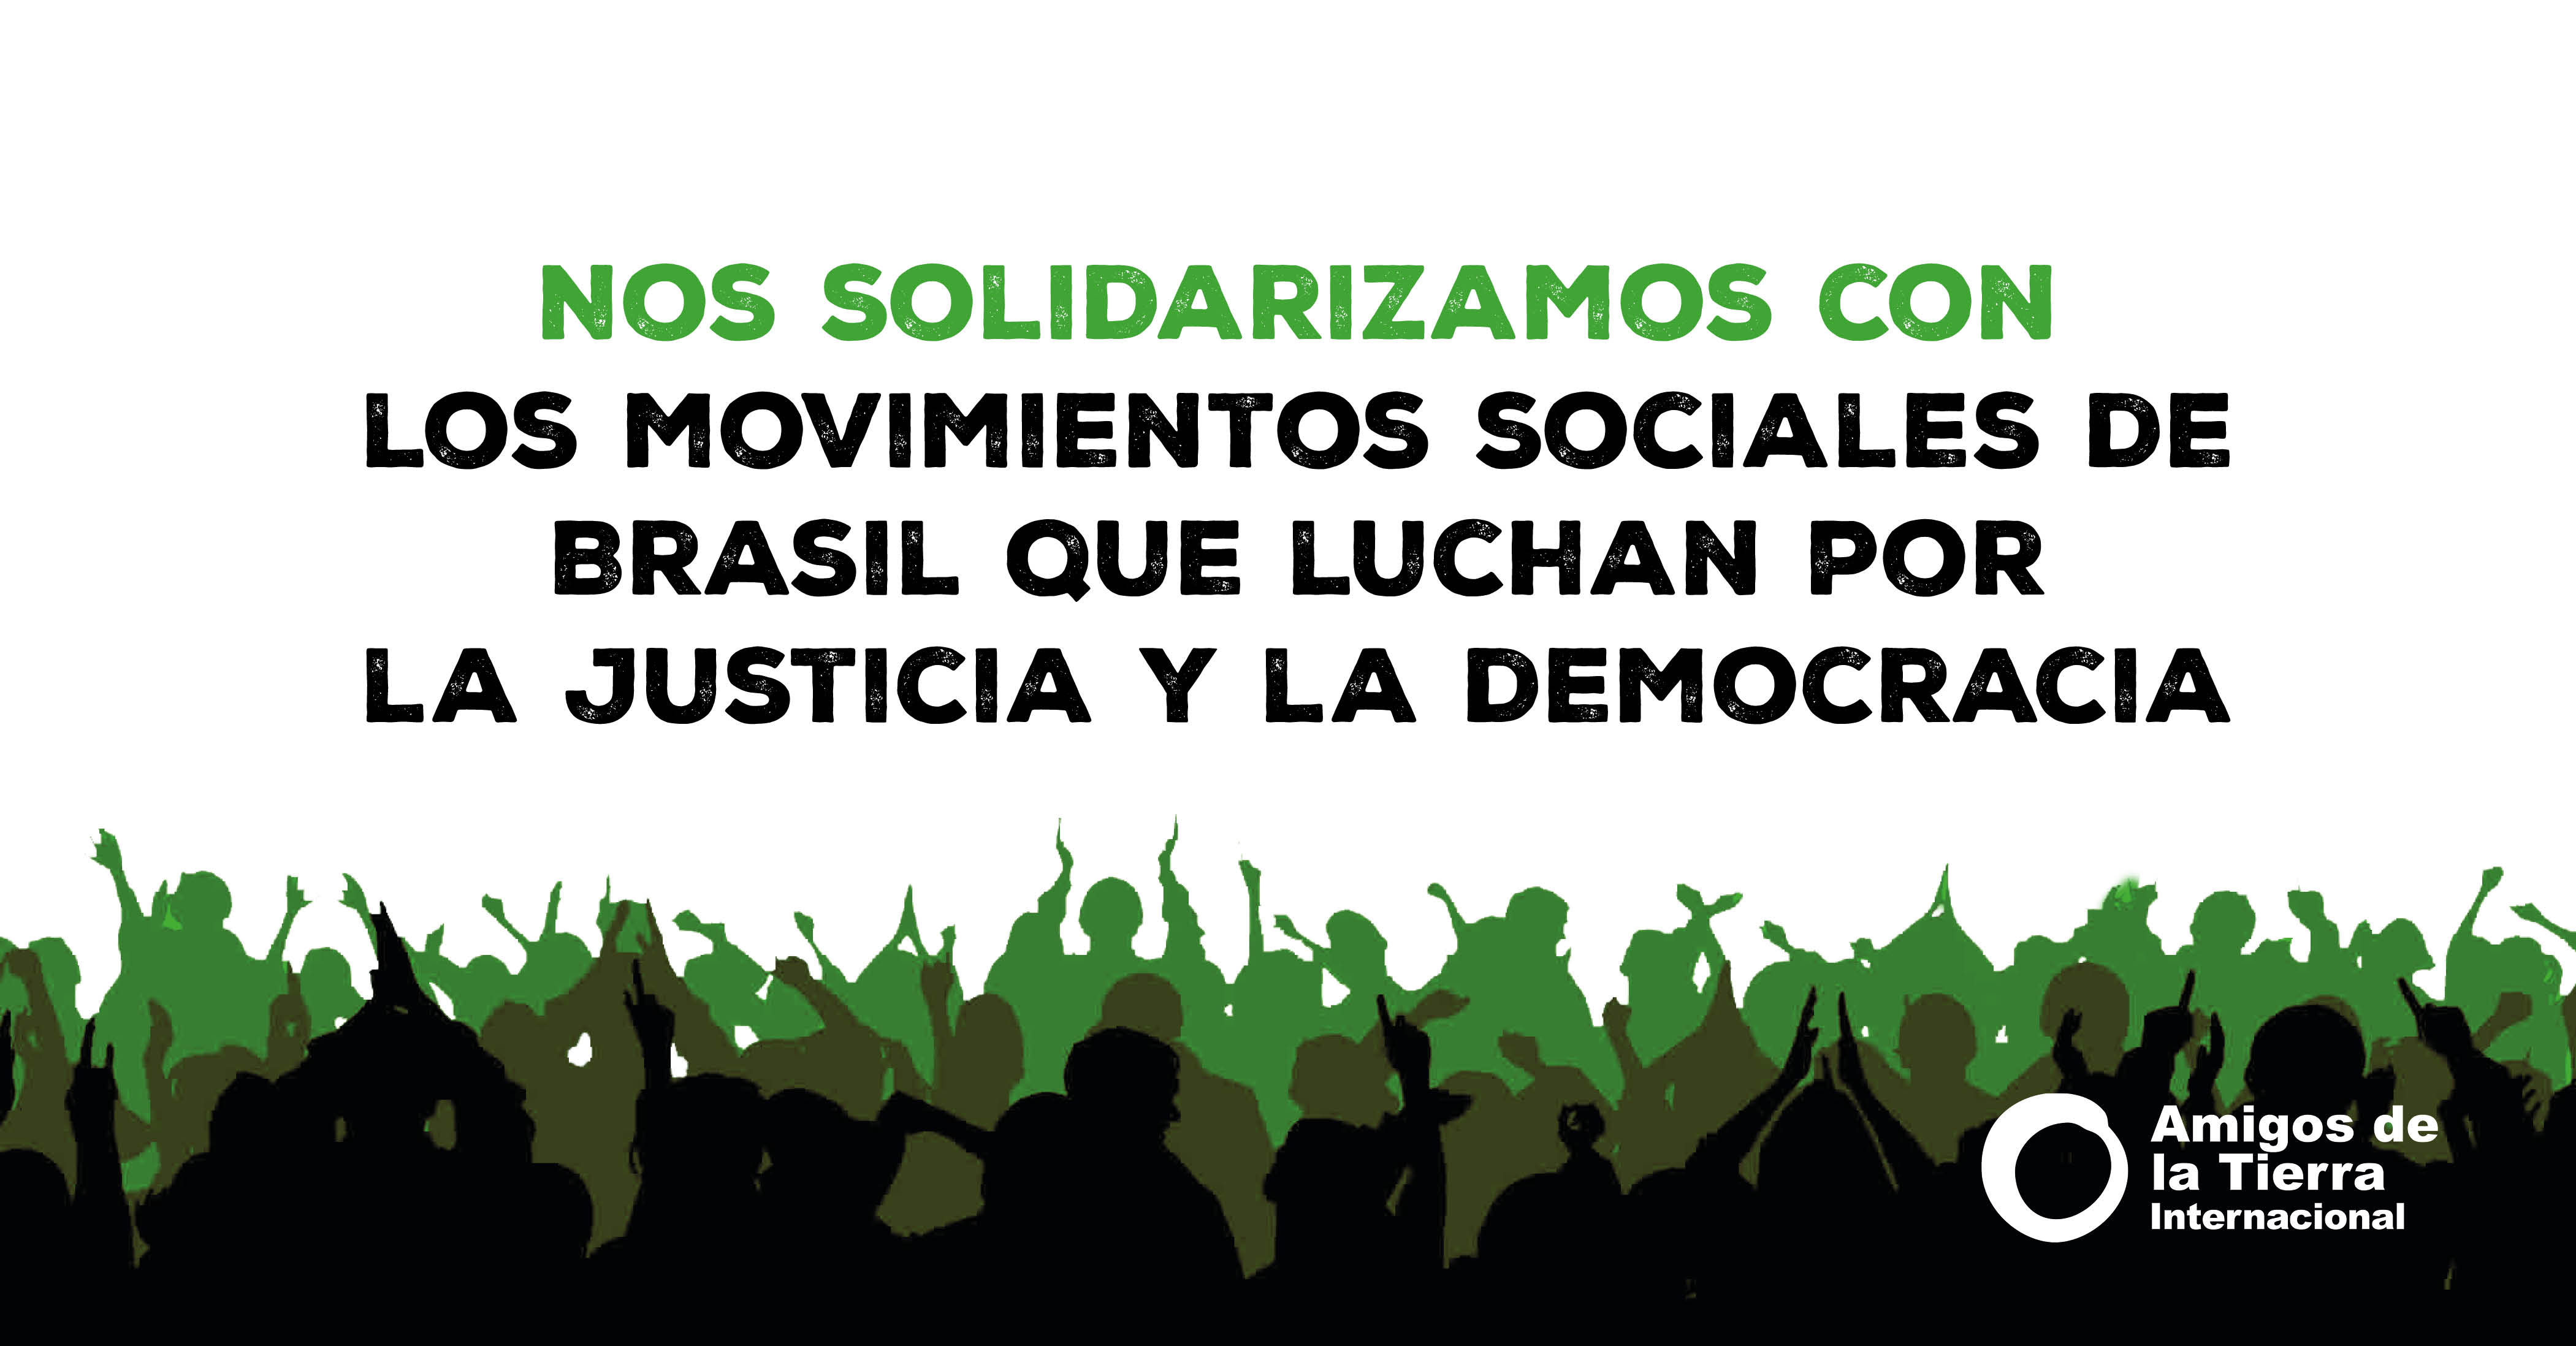 Resistencia antimperialista y solidaridad - Radio Mundo RealRadio Mundo Real